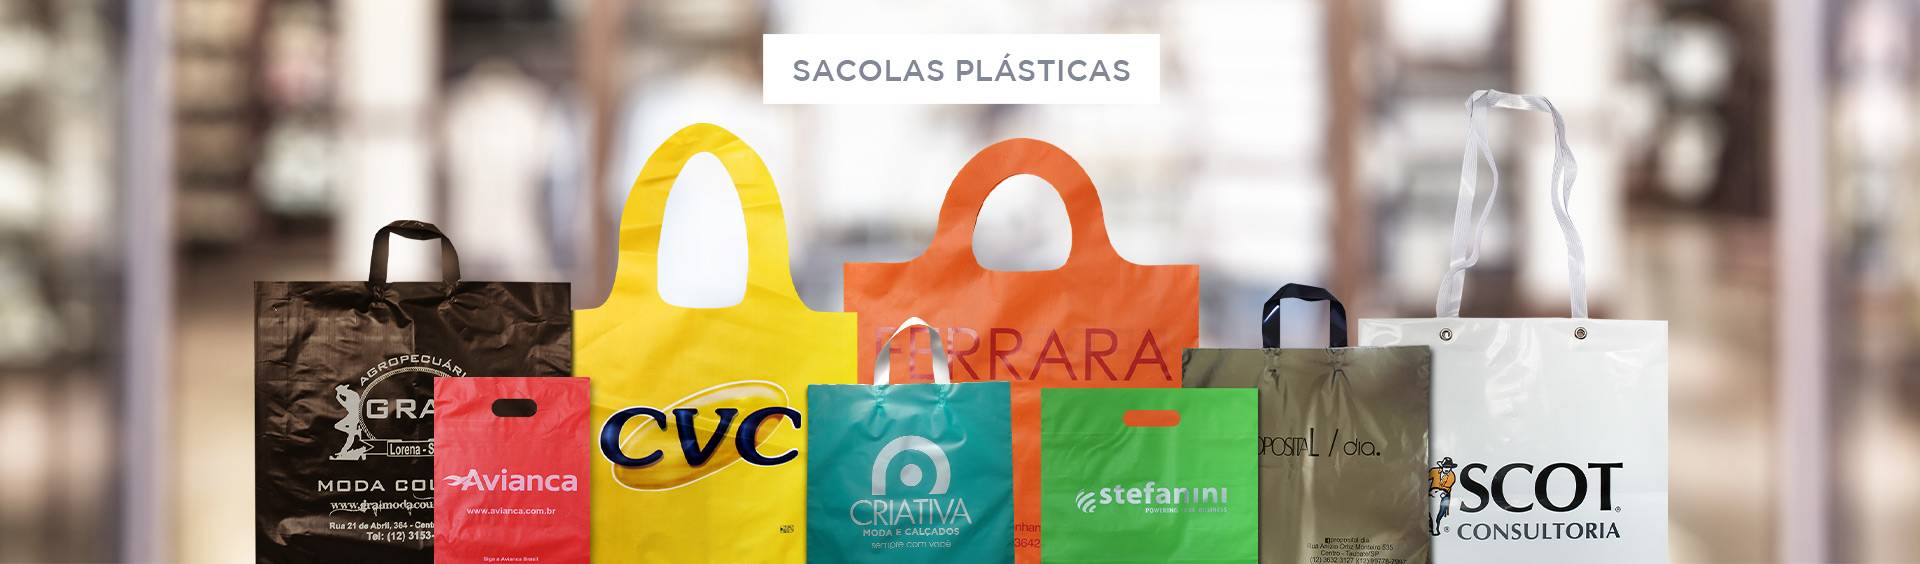 sacolas plásticas personalizadas